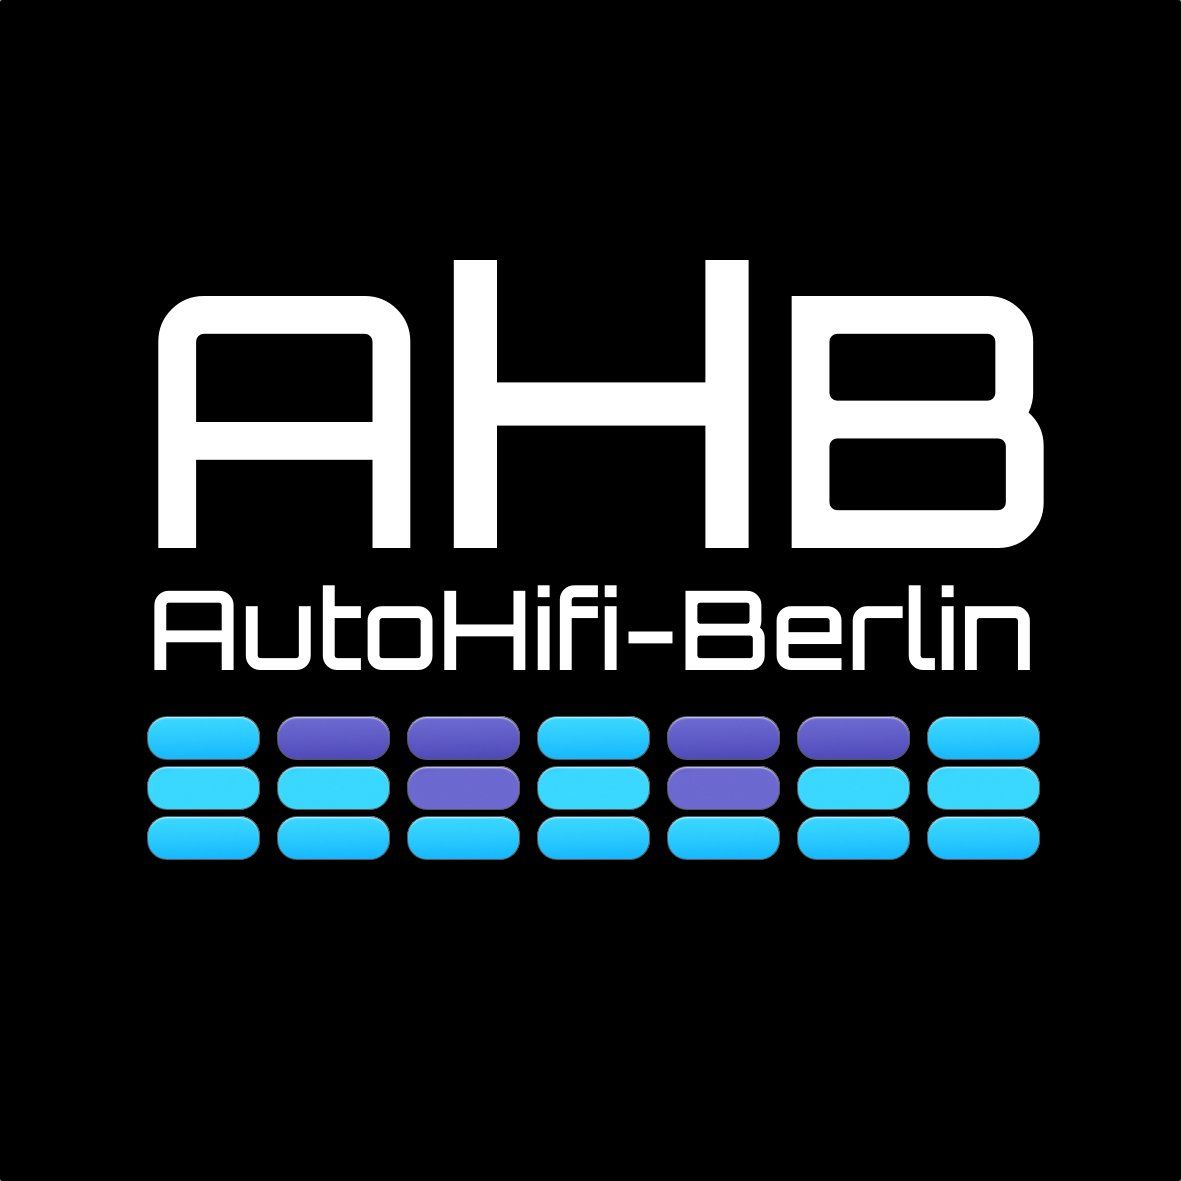 www.autohifi-berlin.de